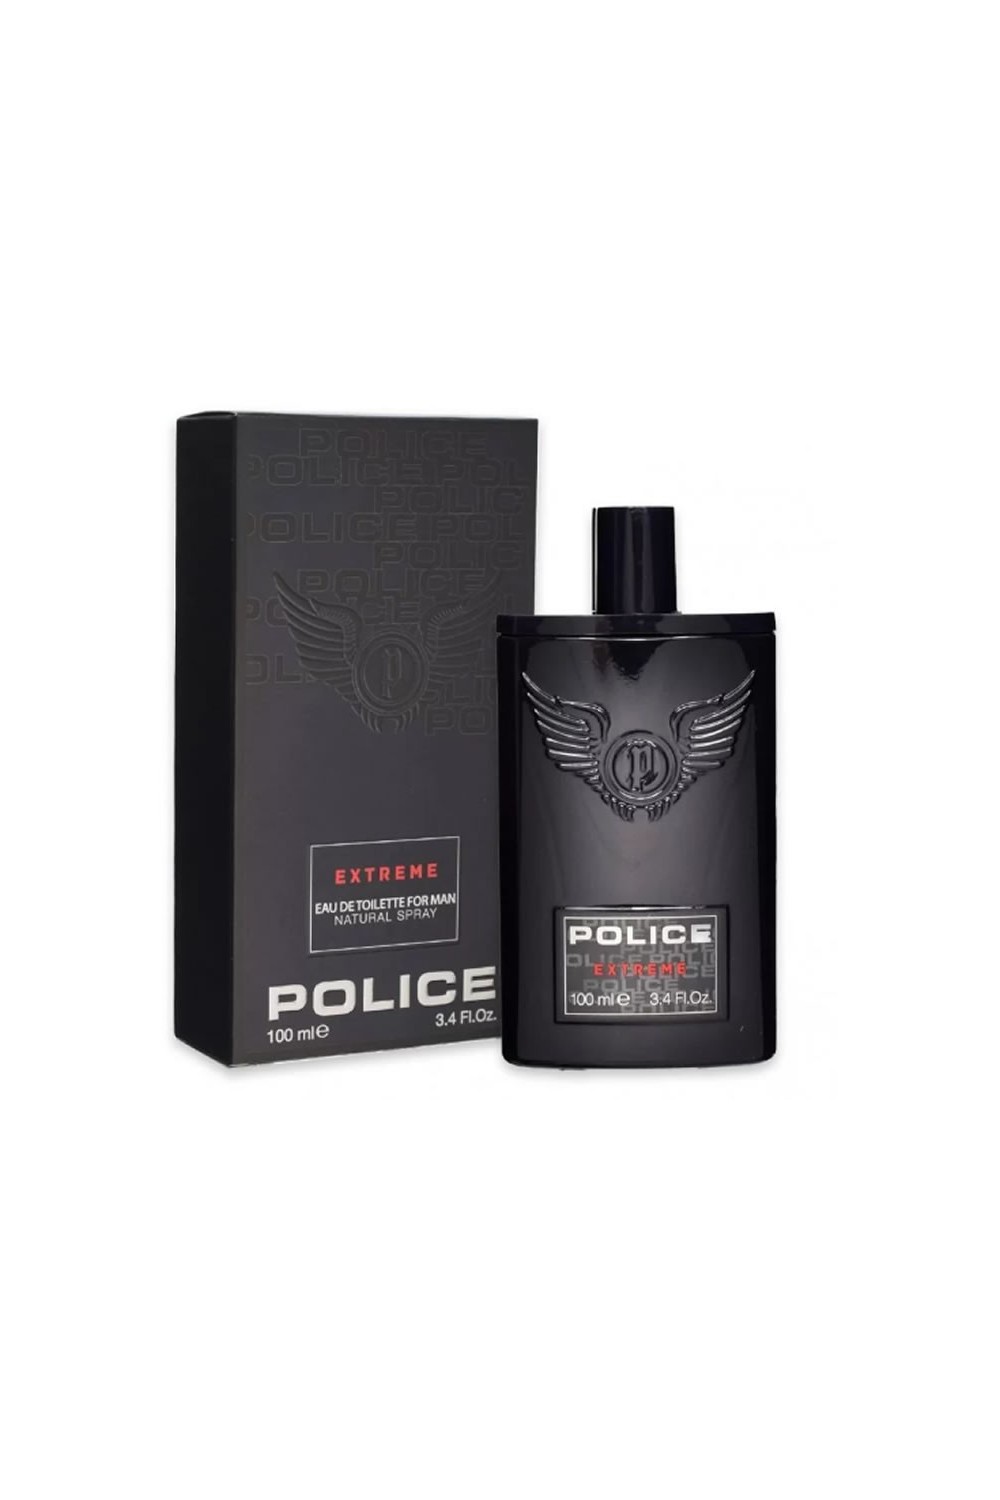 Police Extreme Eau De Toilette Spray 100ml